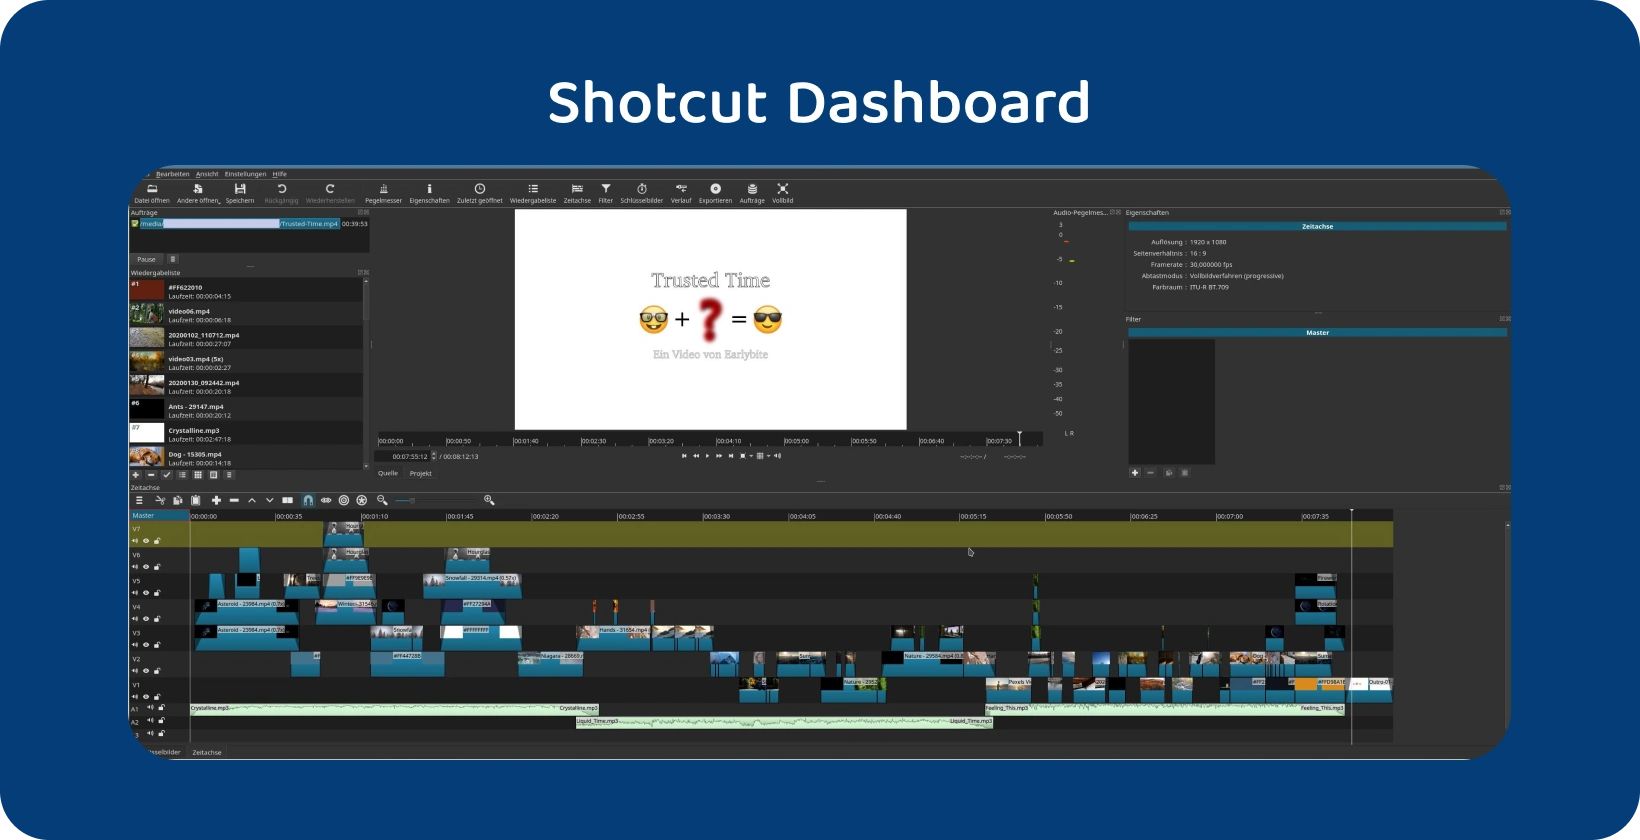 A videószerkesztő szoftver Shotcut összetett idővonalat jelenít meg több sávval, jelezve egy fejlett projektet.